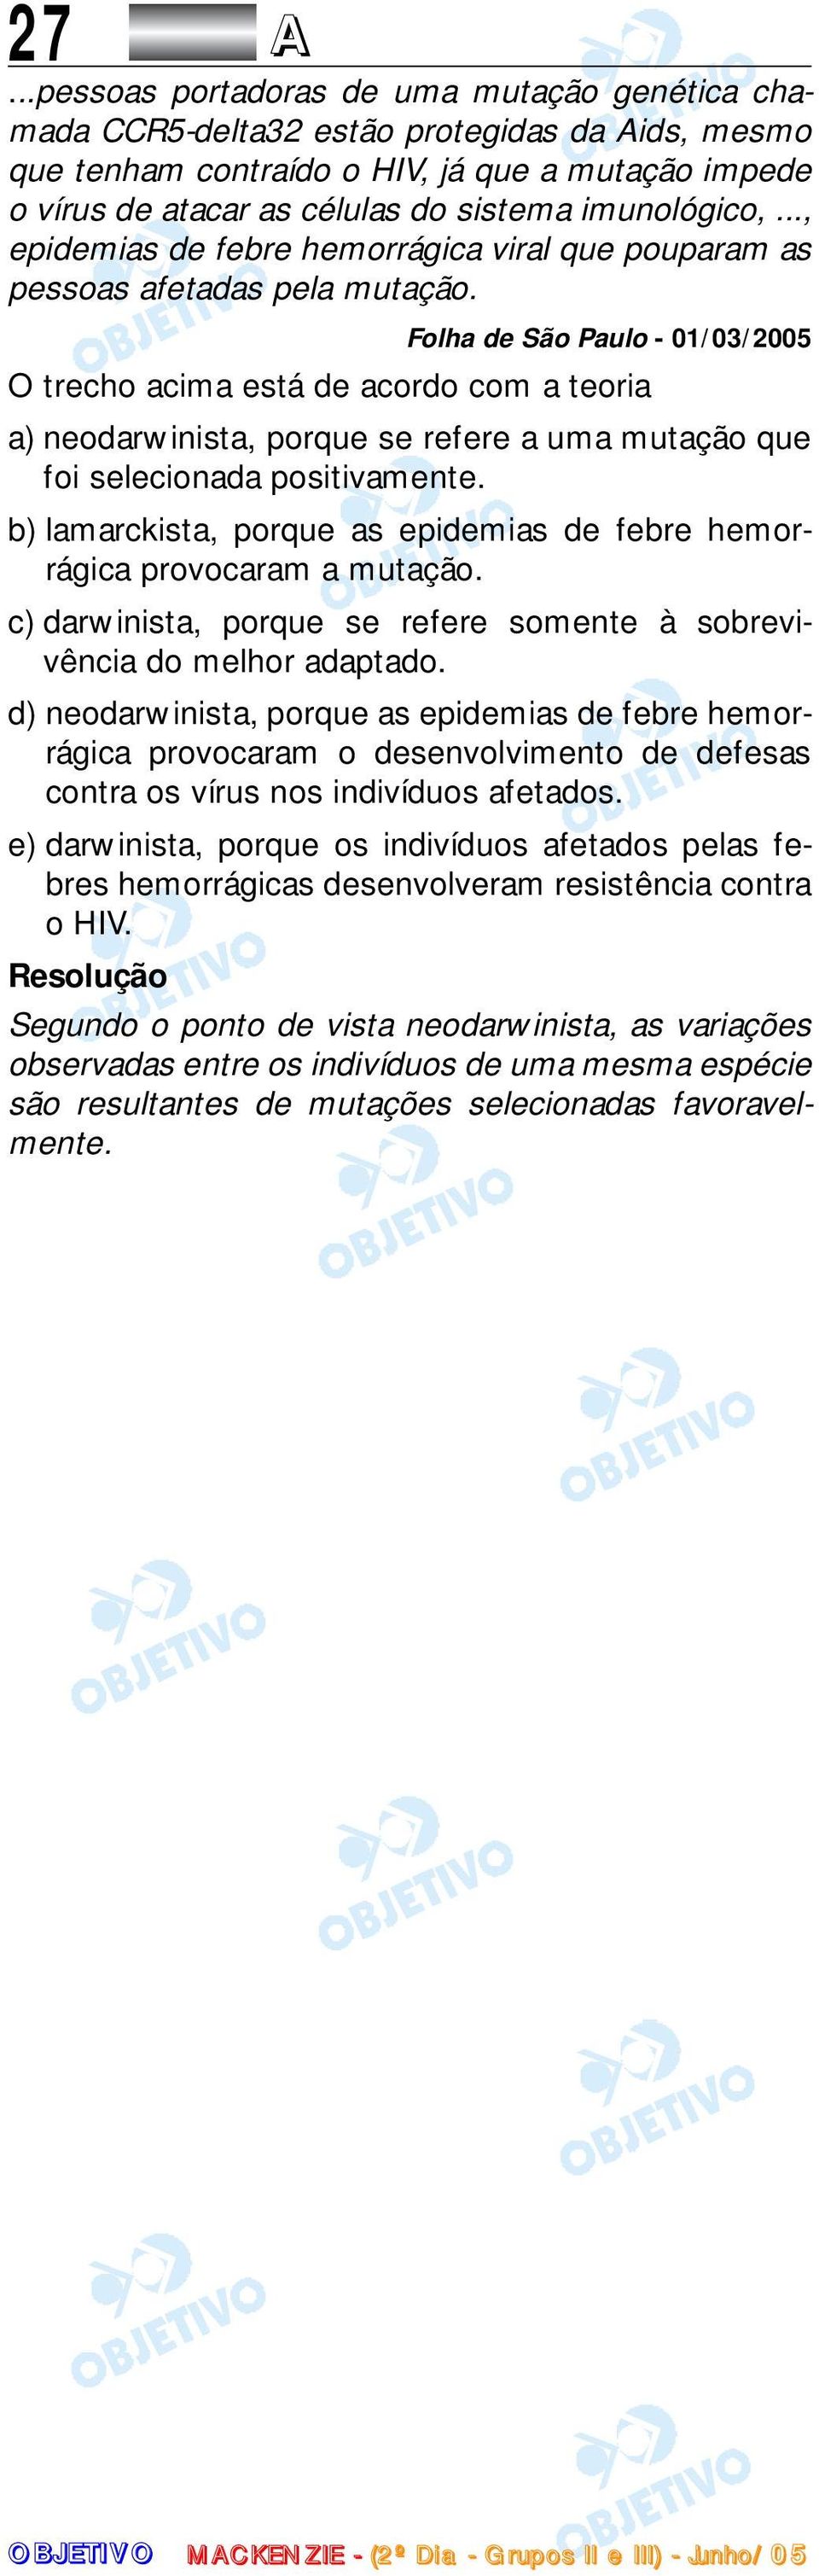 Folha de São Paulo - 01/03/005 O trecho acima está de acordo com a teoria a) neodarwinista, porque se refere a uma mutação que foi selecionada positivamente.